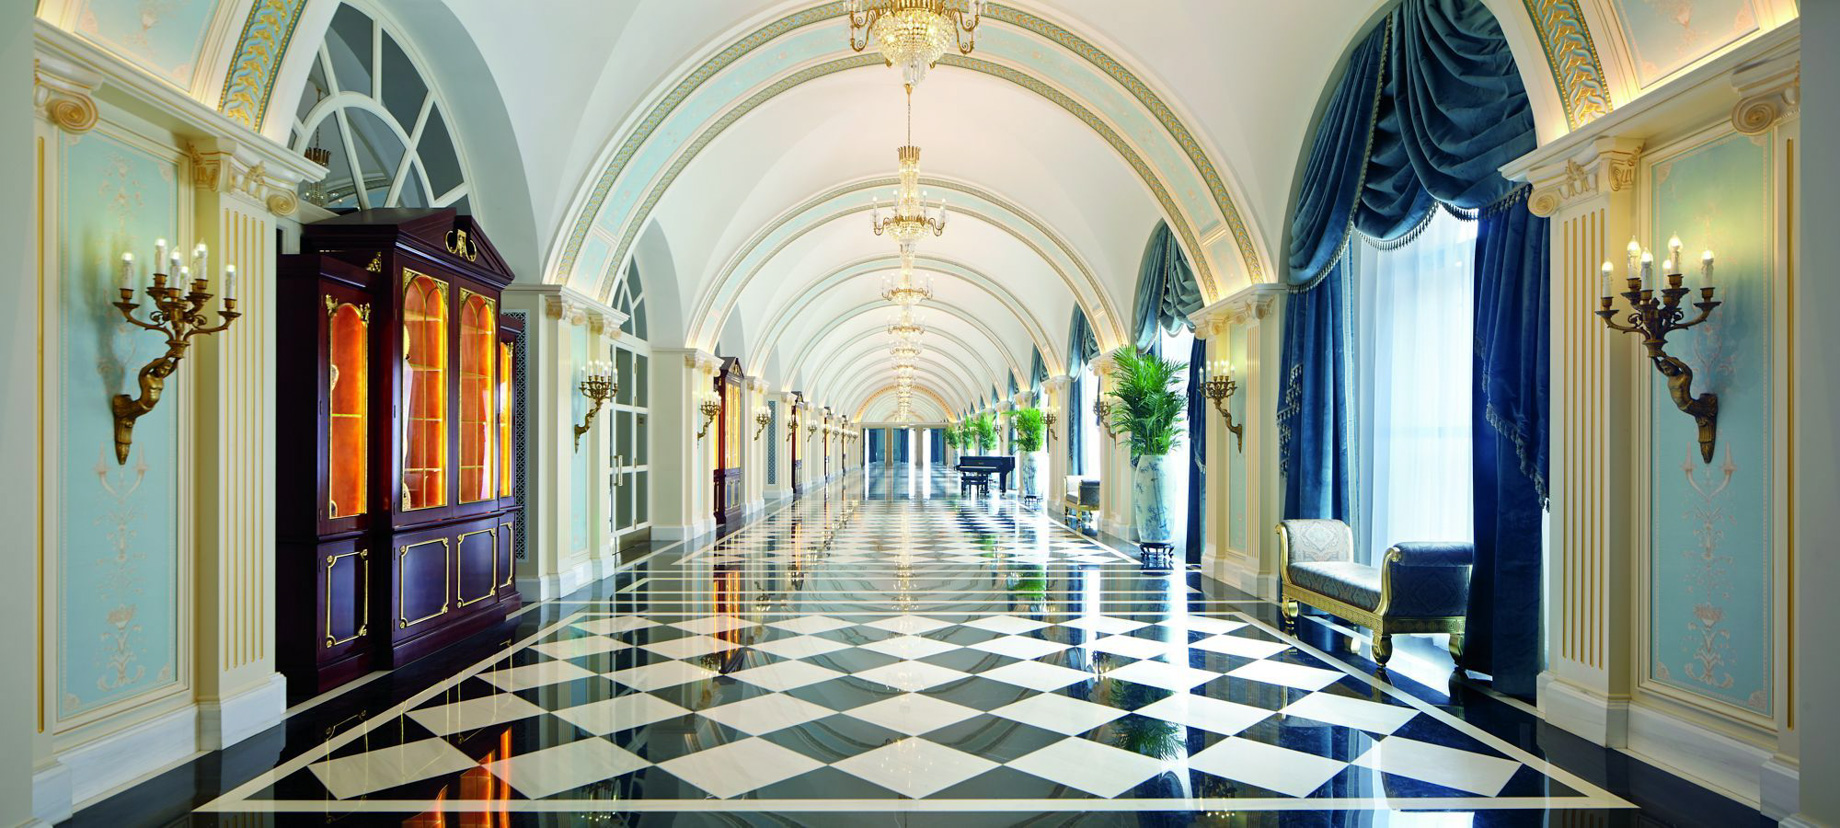 The Ritz-Carlton, Tianjin Hotel – Tianjin, China – Ballroom Foyer